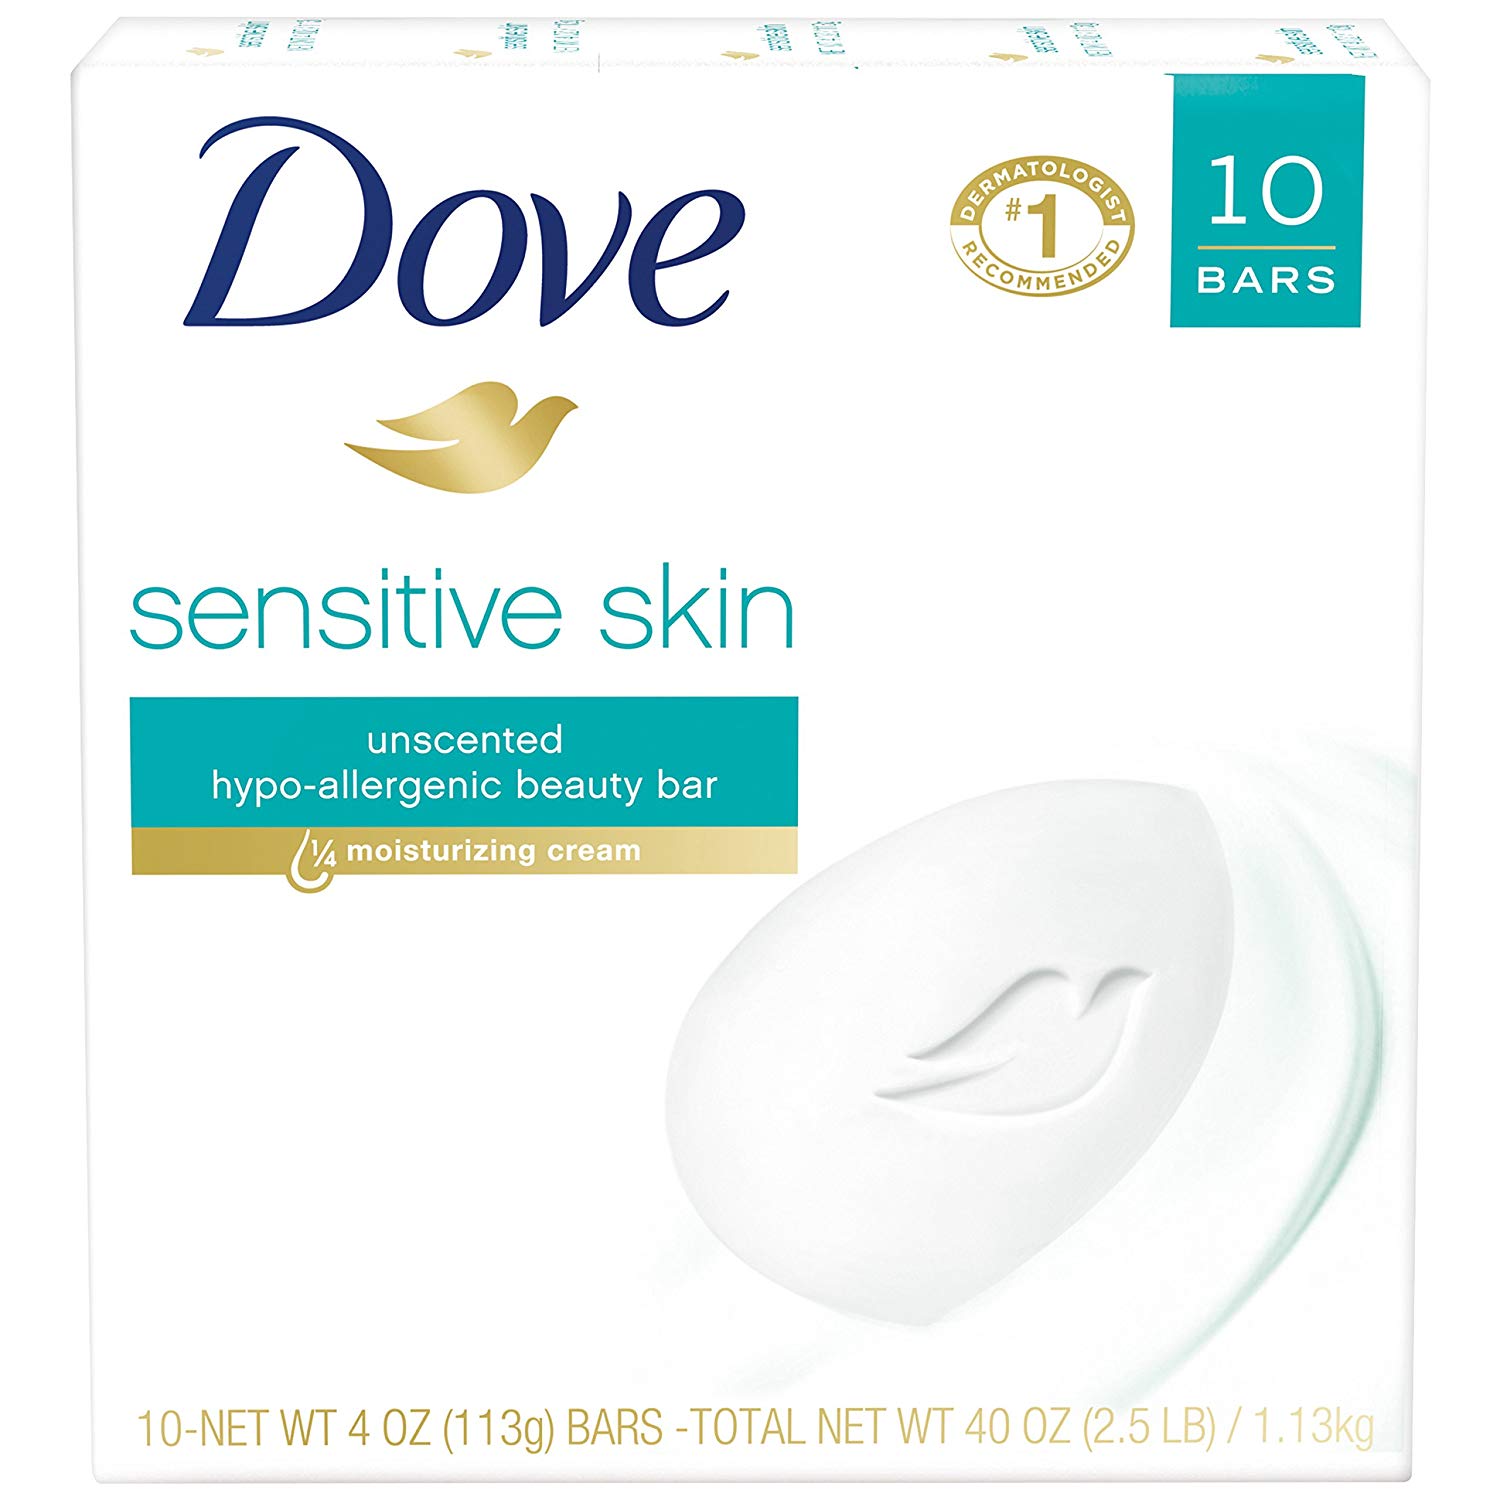 Dove sensitive bar soap